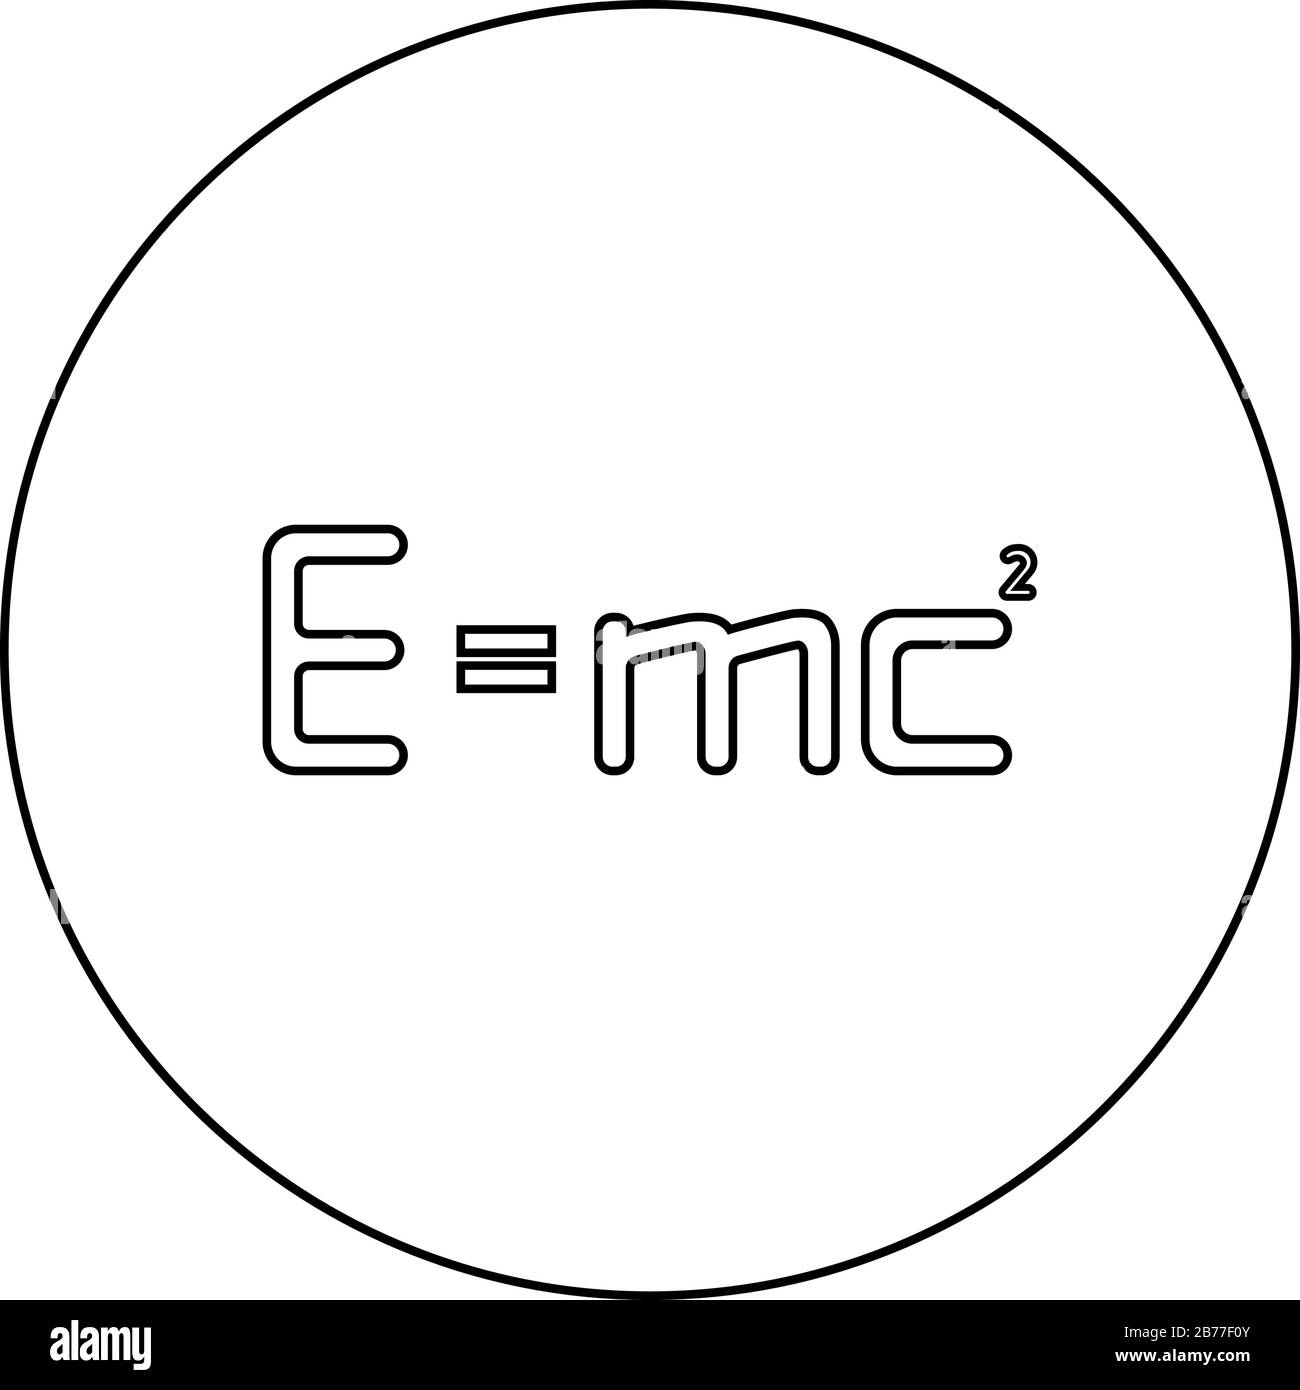 E=mc Quadrat Energie Formel Physikalisches Gesetz E=mc Zeichen e gleich mc 2 Bildungskonzept Relativitätstheorie Symbol im Kreis runder Umriss schwarze Farbe Stock Vektor